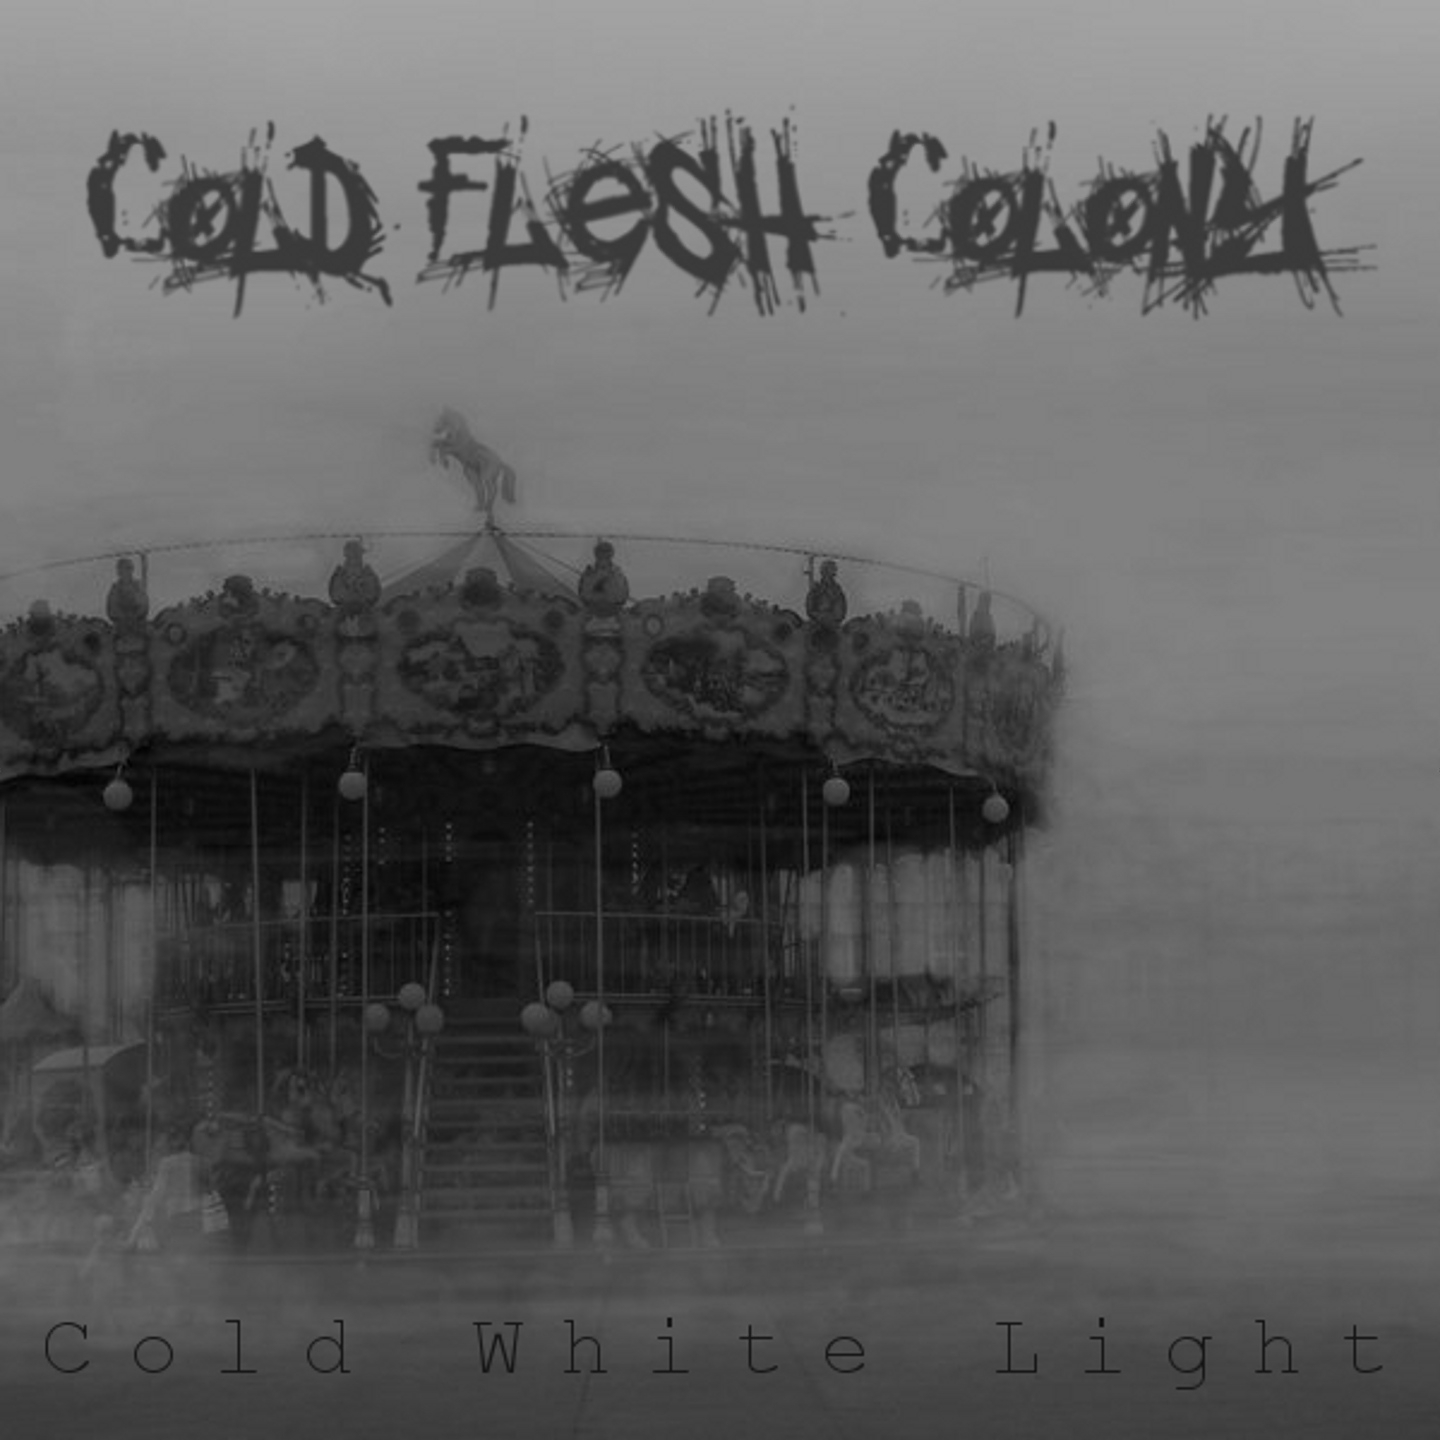 Cold Colony.